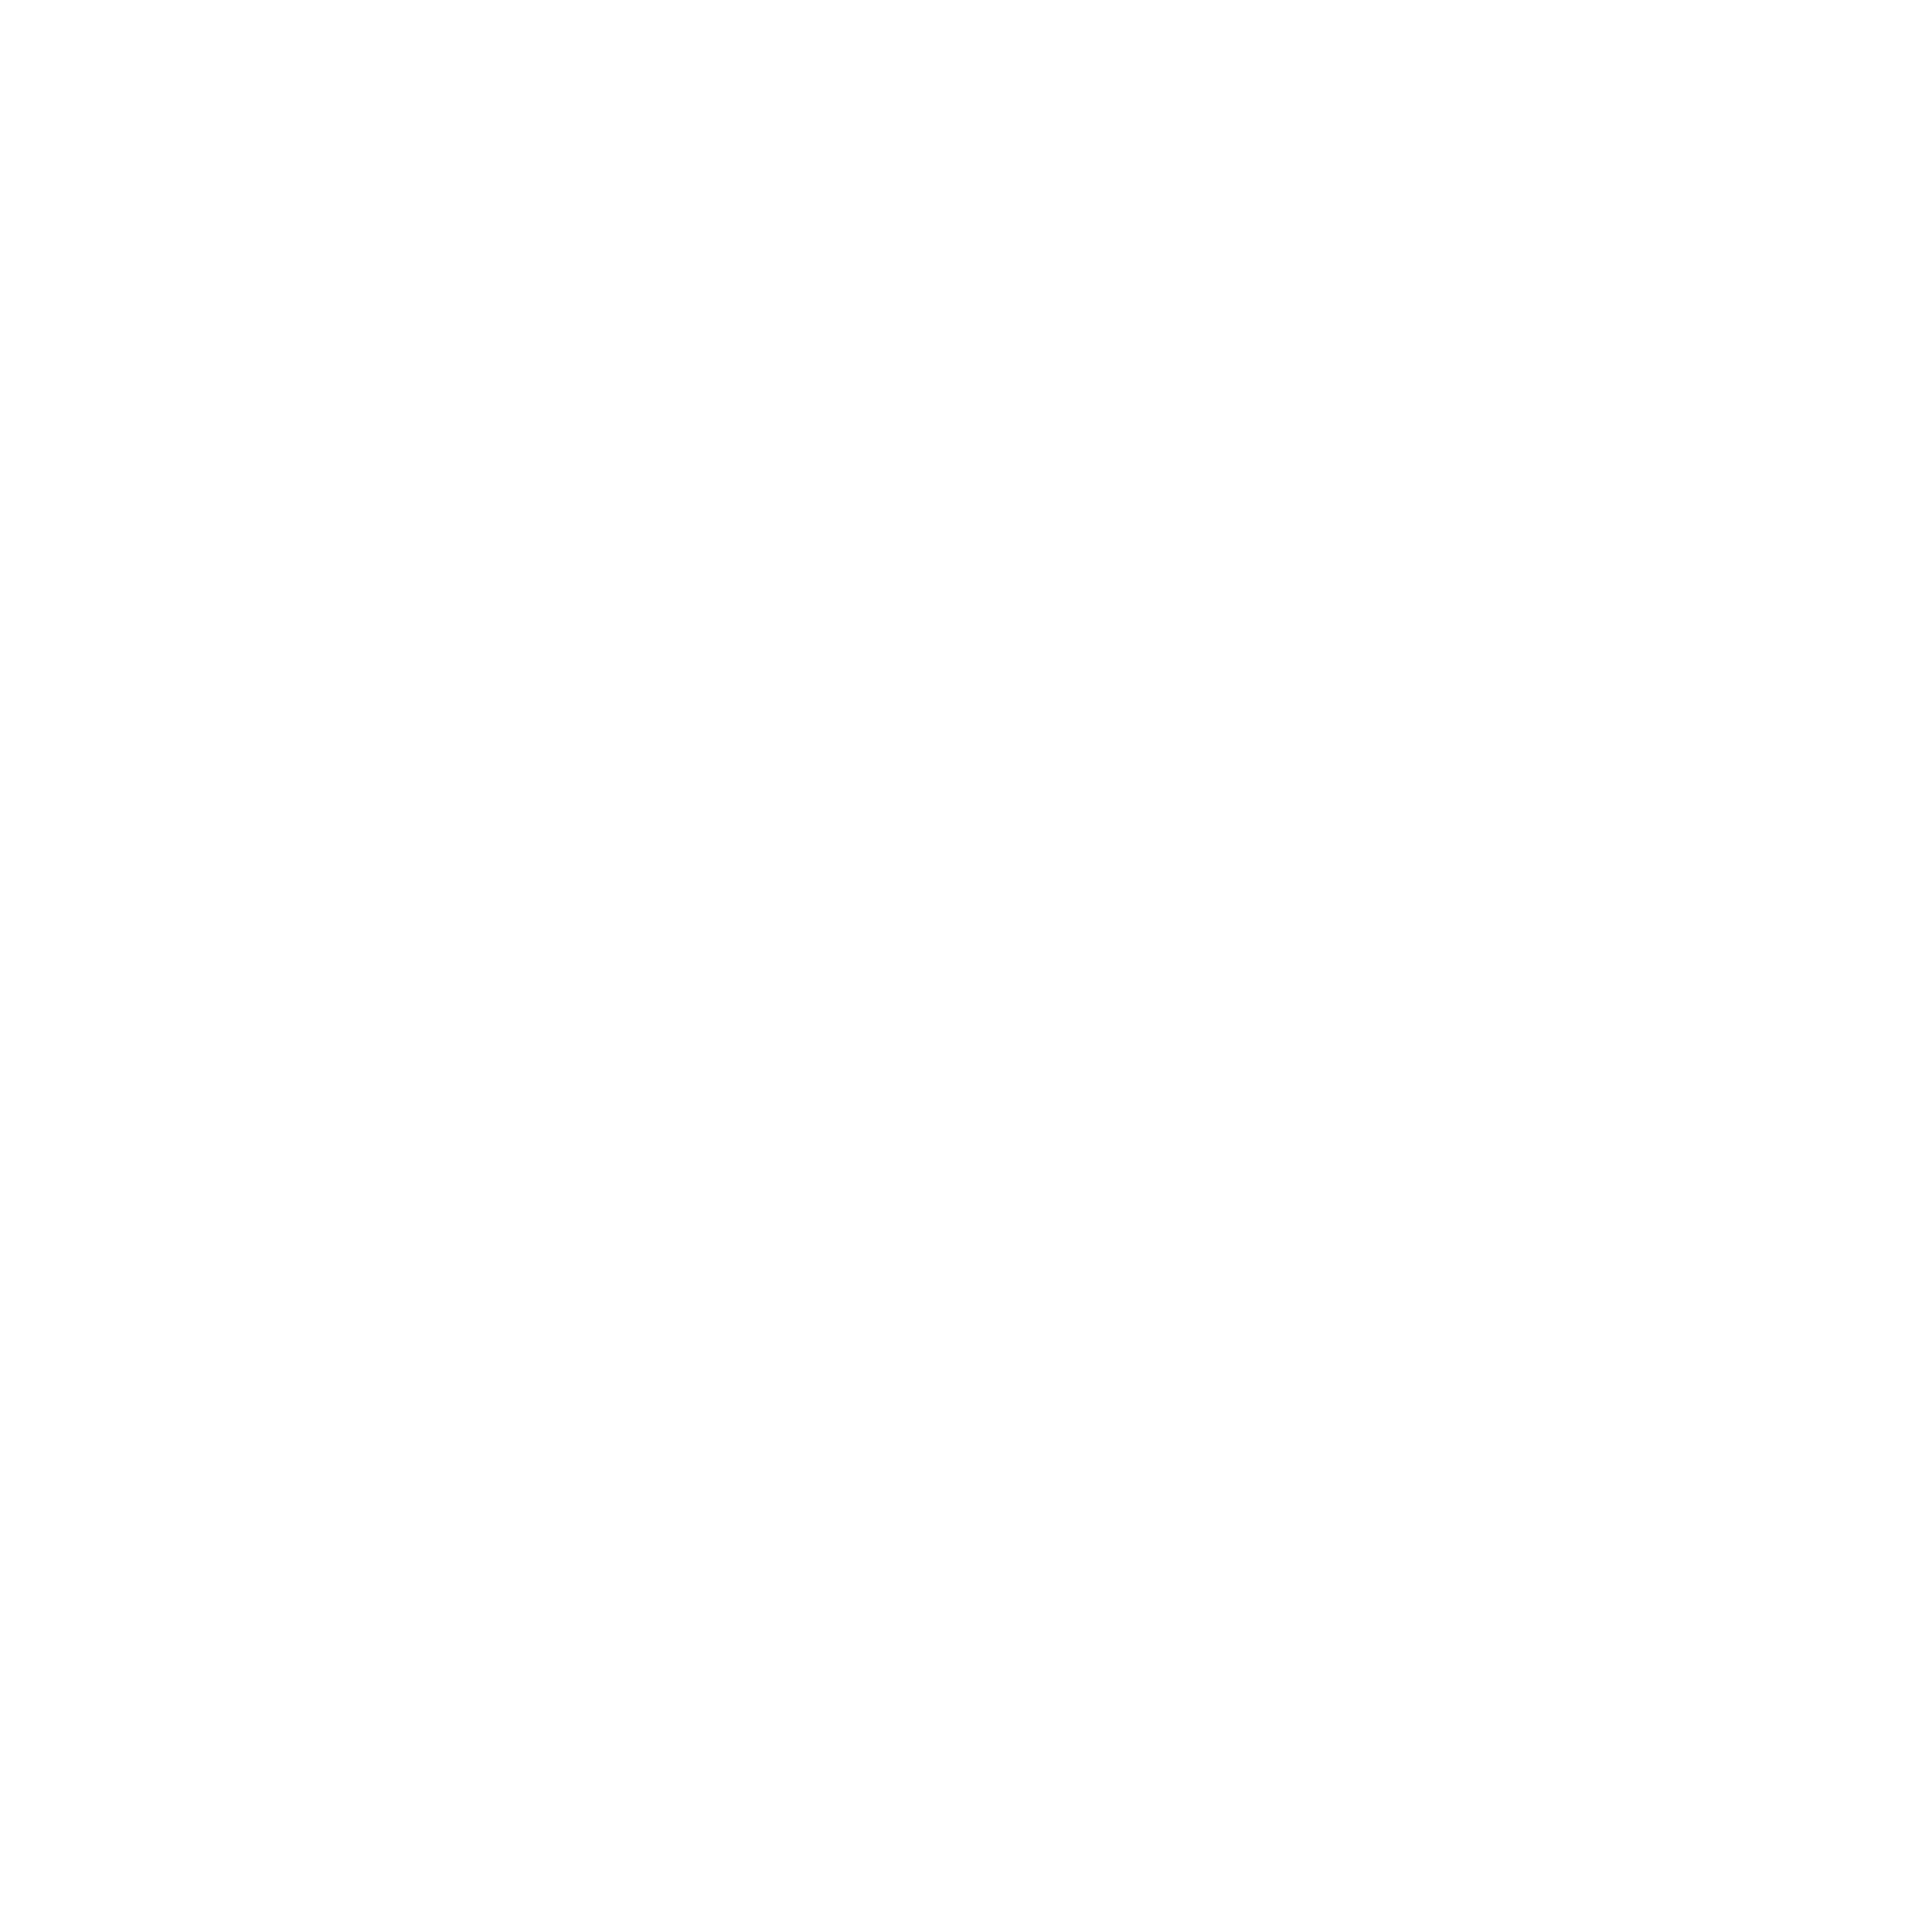 AniCura Kleintierklinik Babenhausen logo